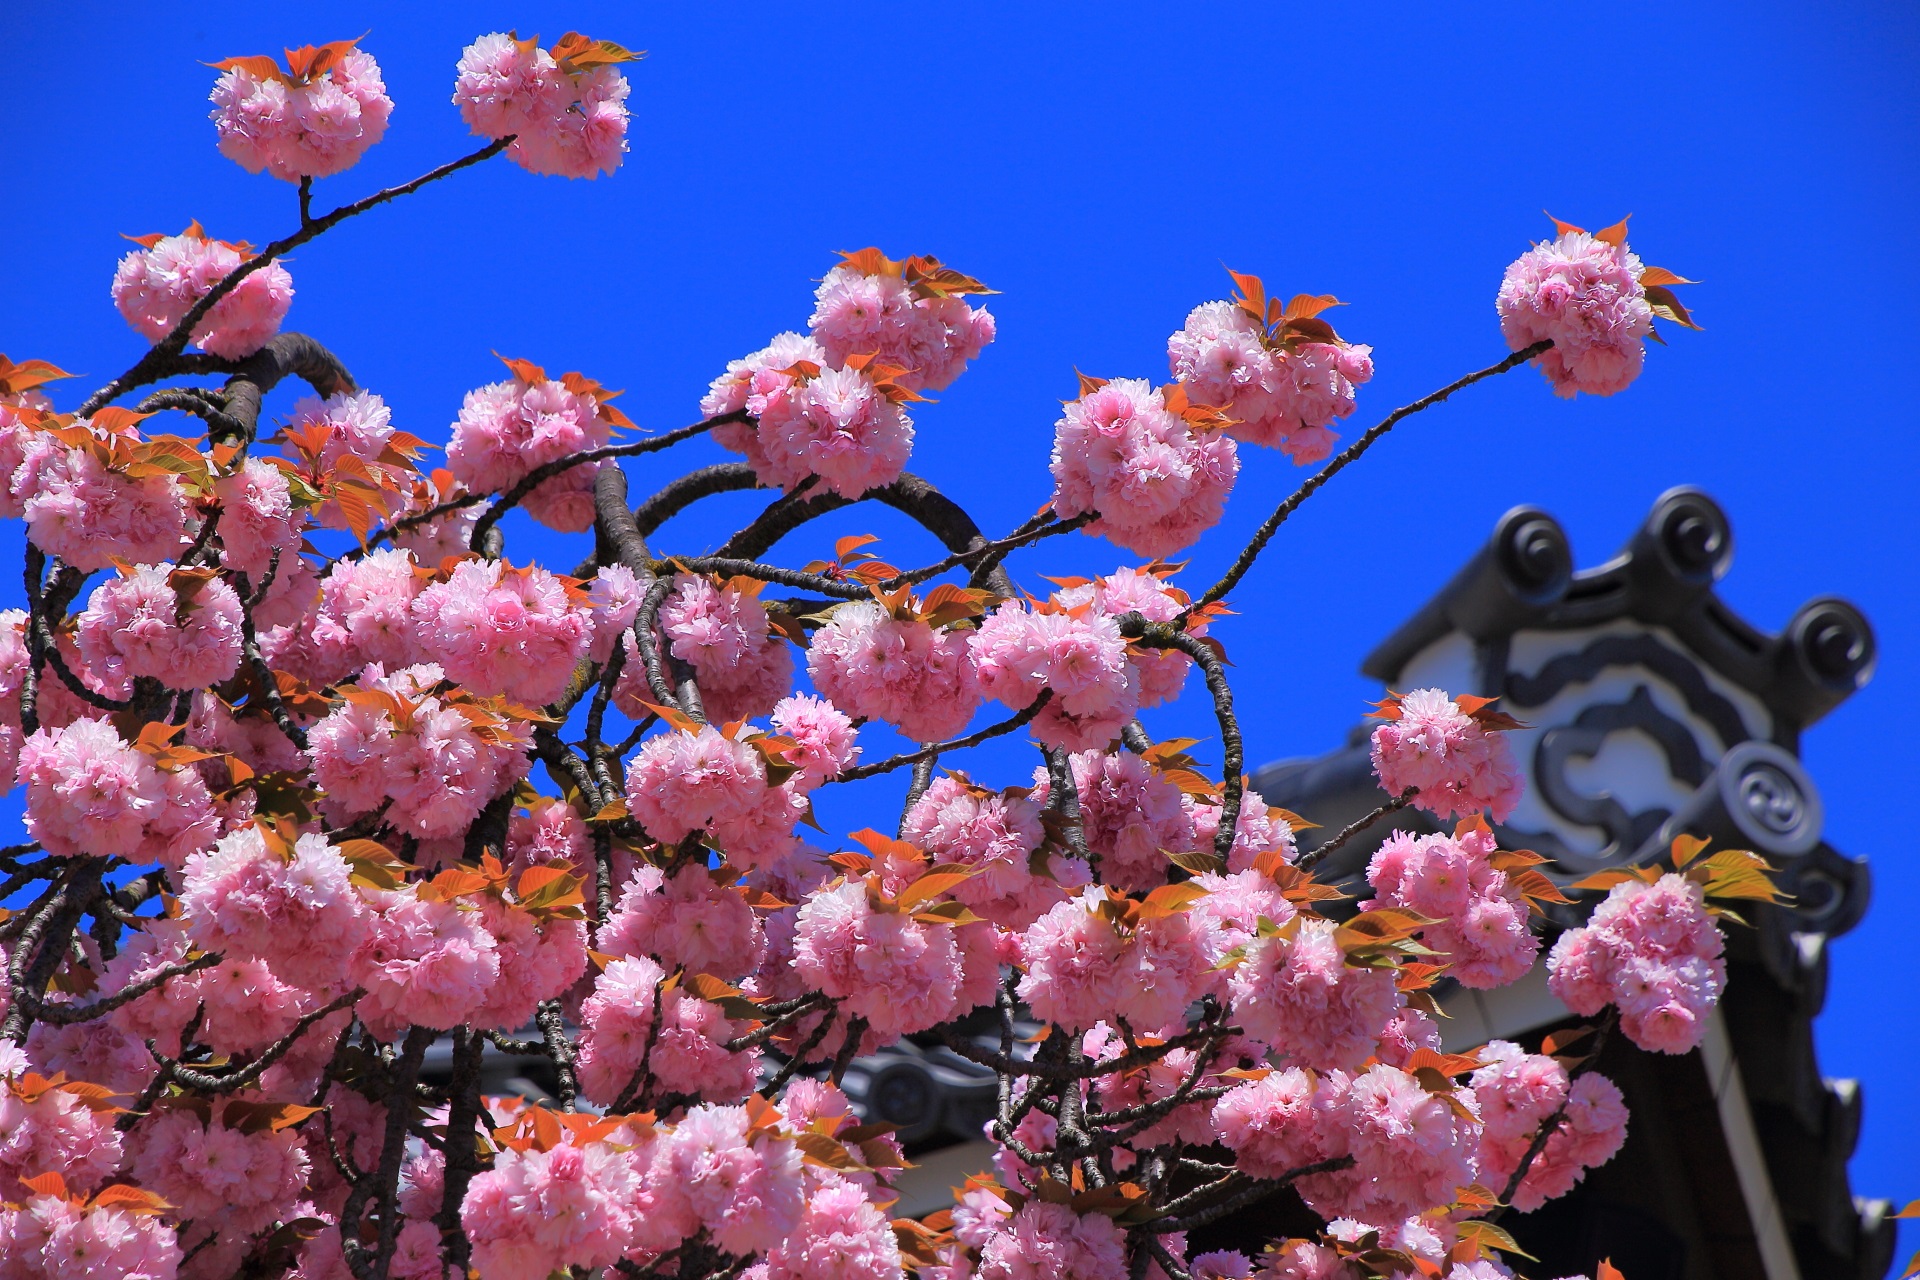 太陽に照らされて煌びやかに輝く桜